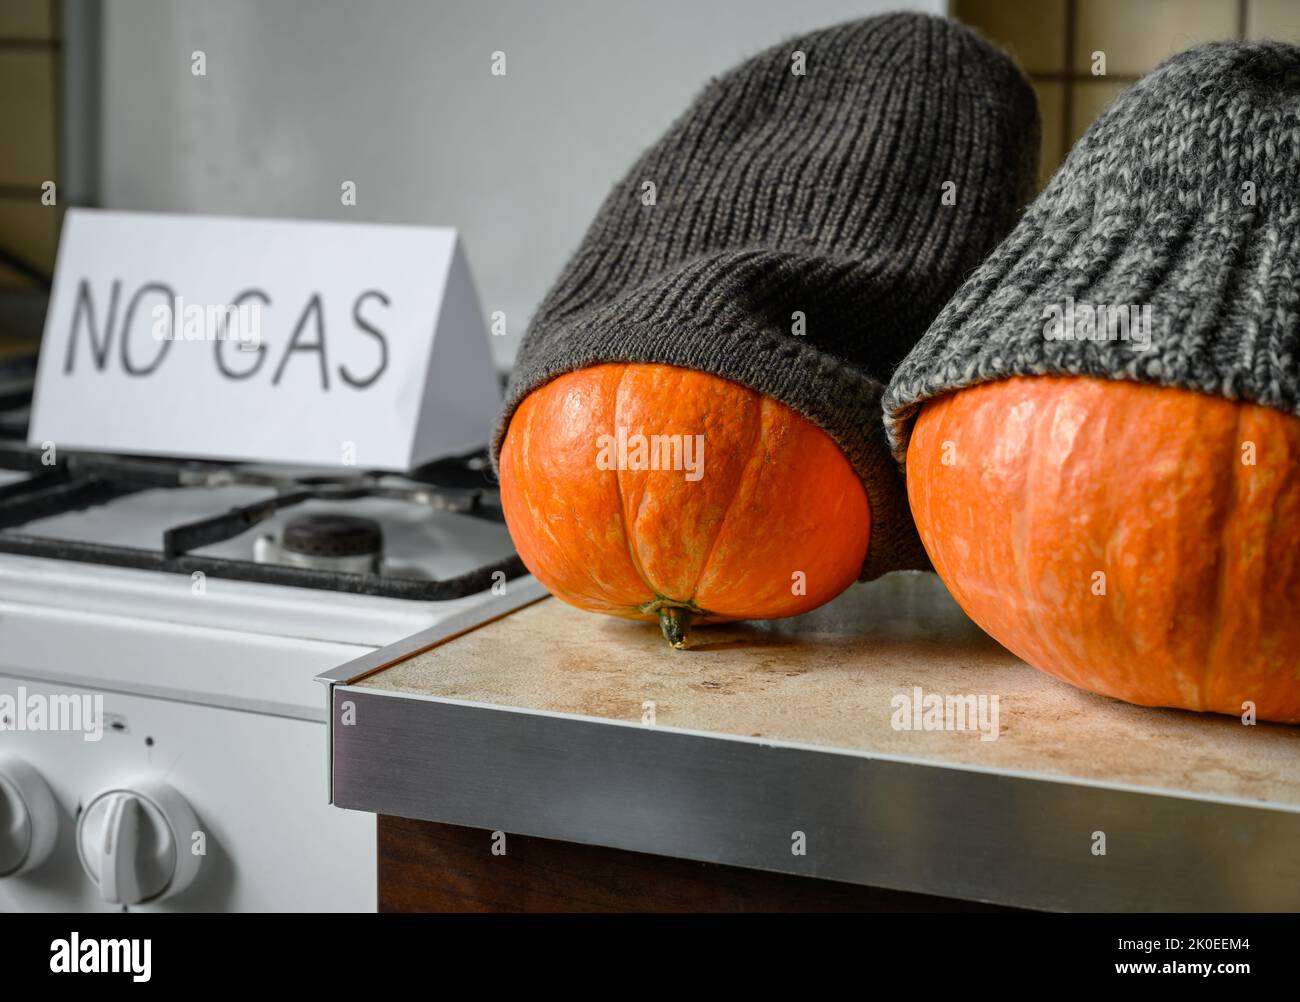 Citrouilles en chapeaux tricotés d'hiver sur Halloween à la maison froide, gaz coûteux et électricité pour le chauffage, les légumes drôles sont gelés. Crise énergétique, thanksg Banque D'Images